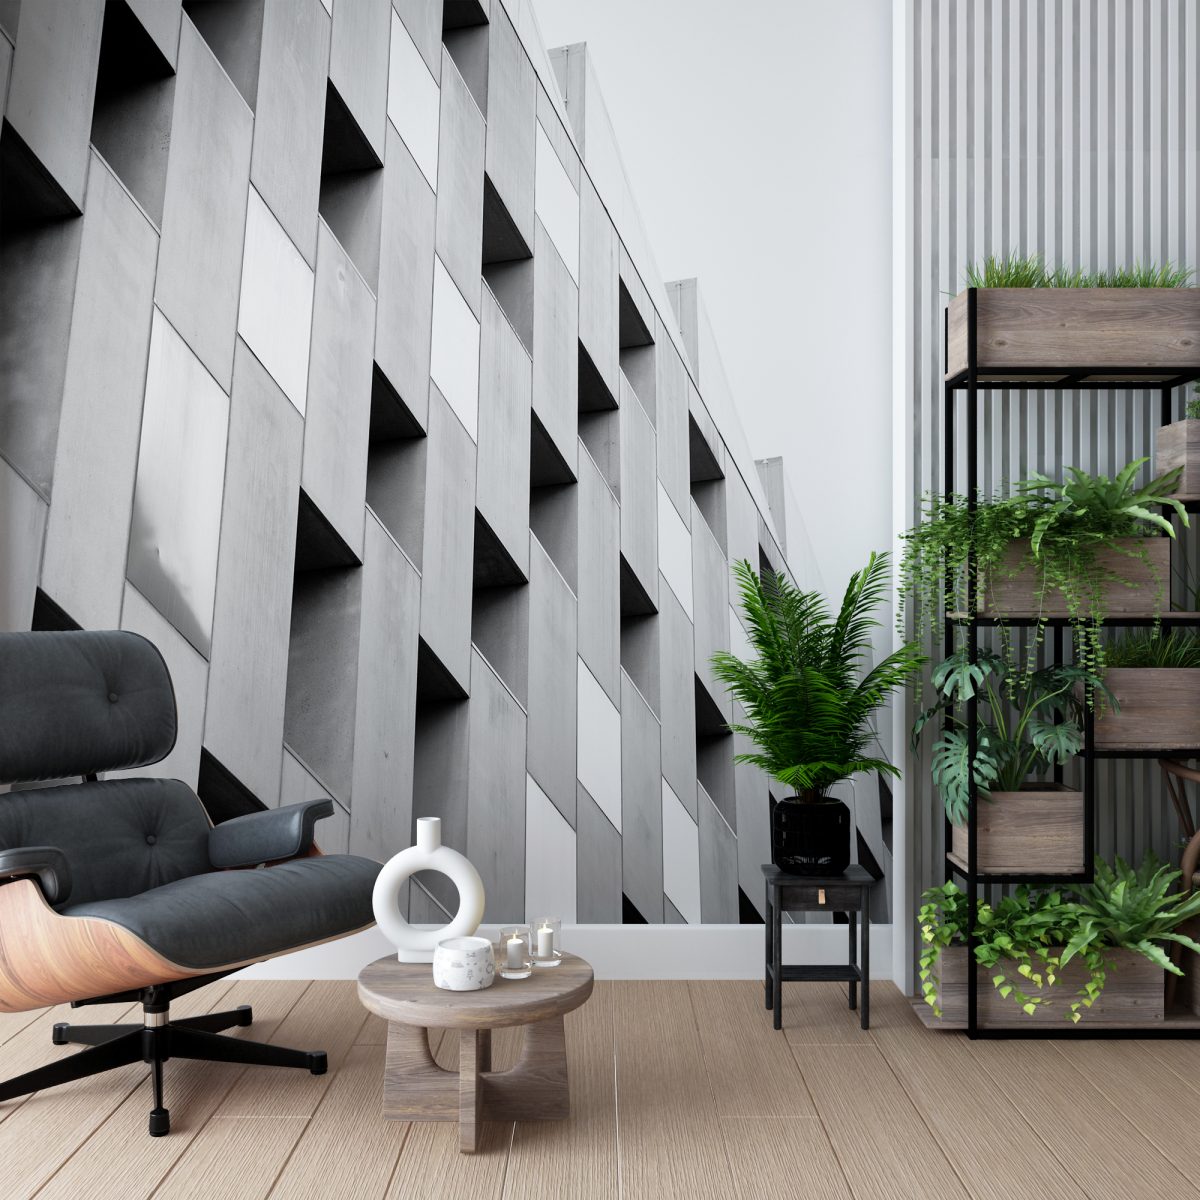 Living Room Wallpaper | Bedroom Decor Ideas